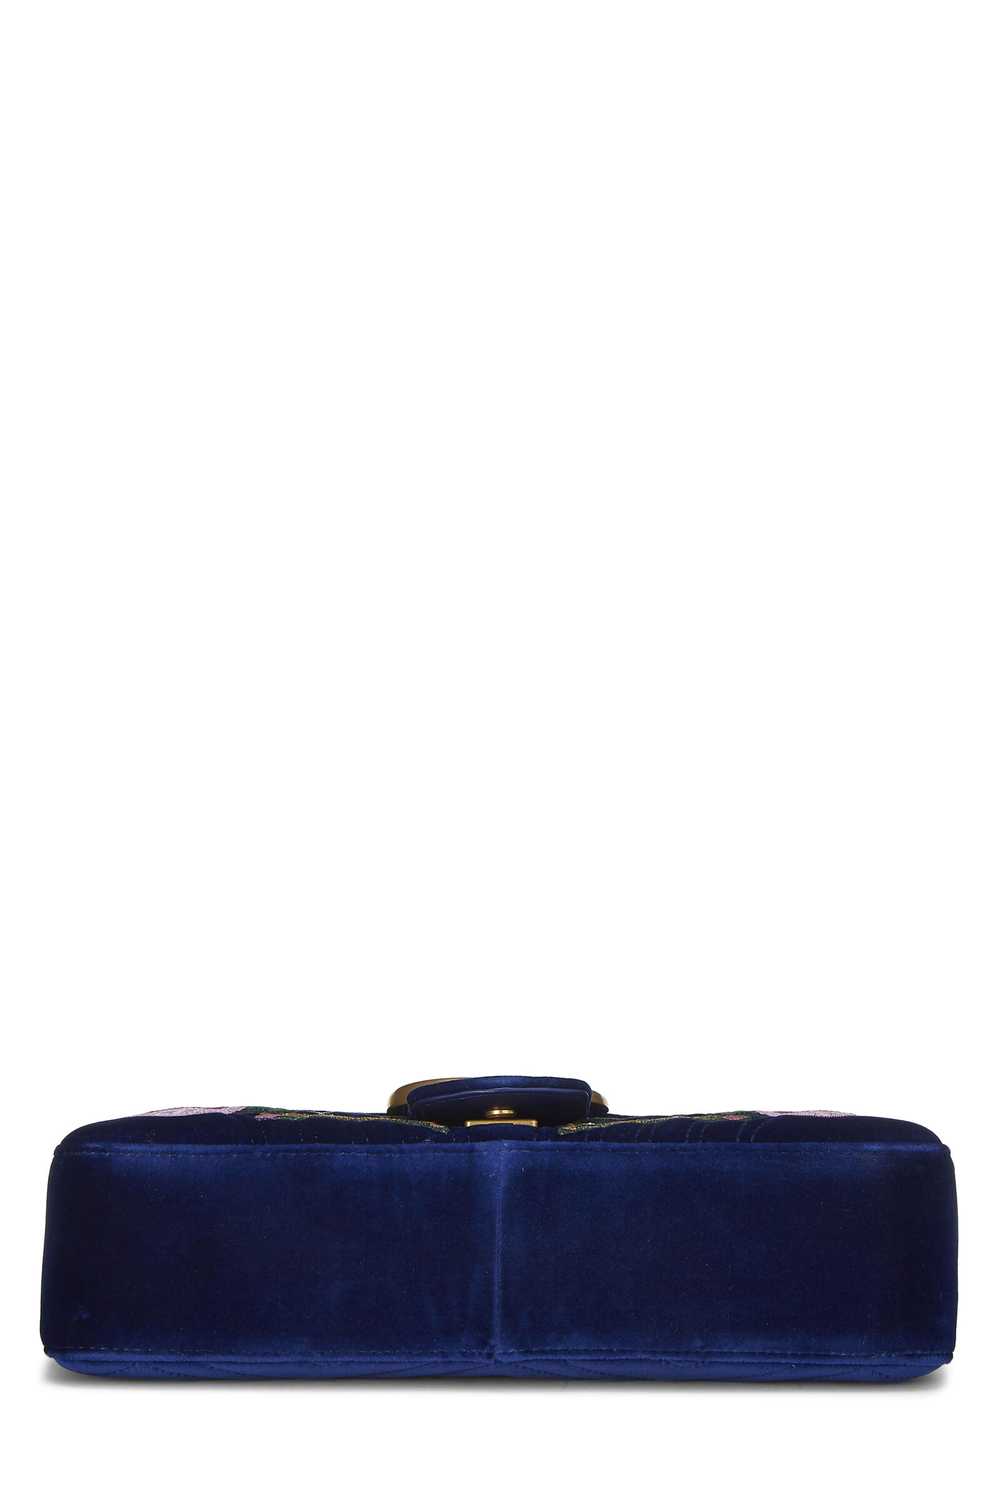 Blue Velvet GG Marmont Modern Shoulder Bag - image 5